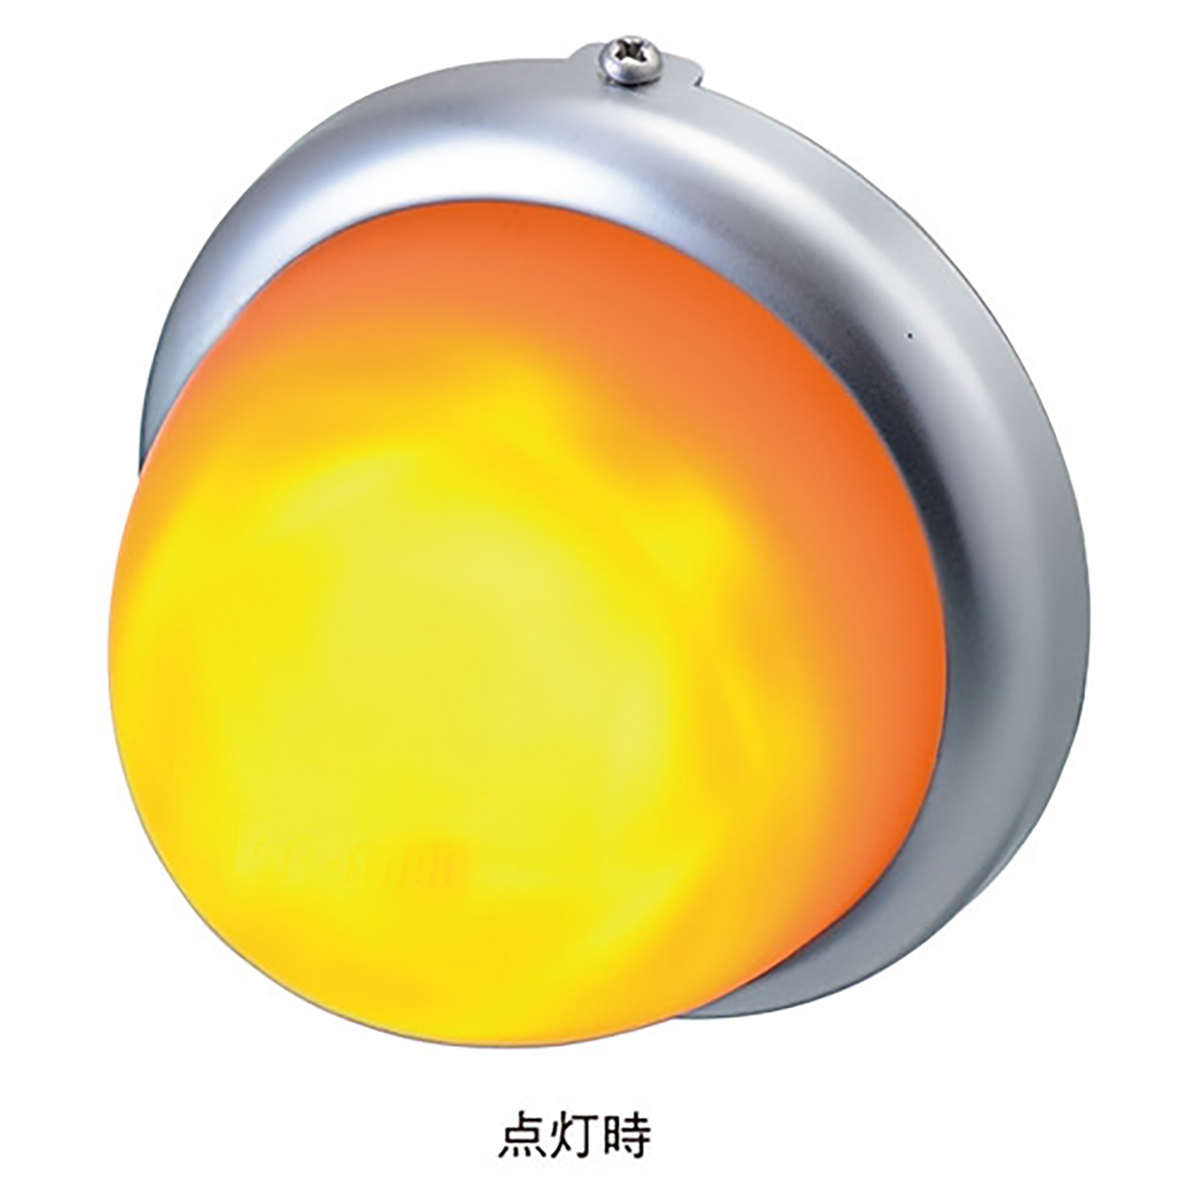 マーカー ランプ LED シリコンレンズ オレンジ DC12/DC24V 防水